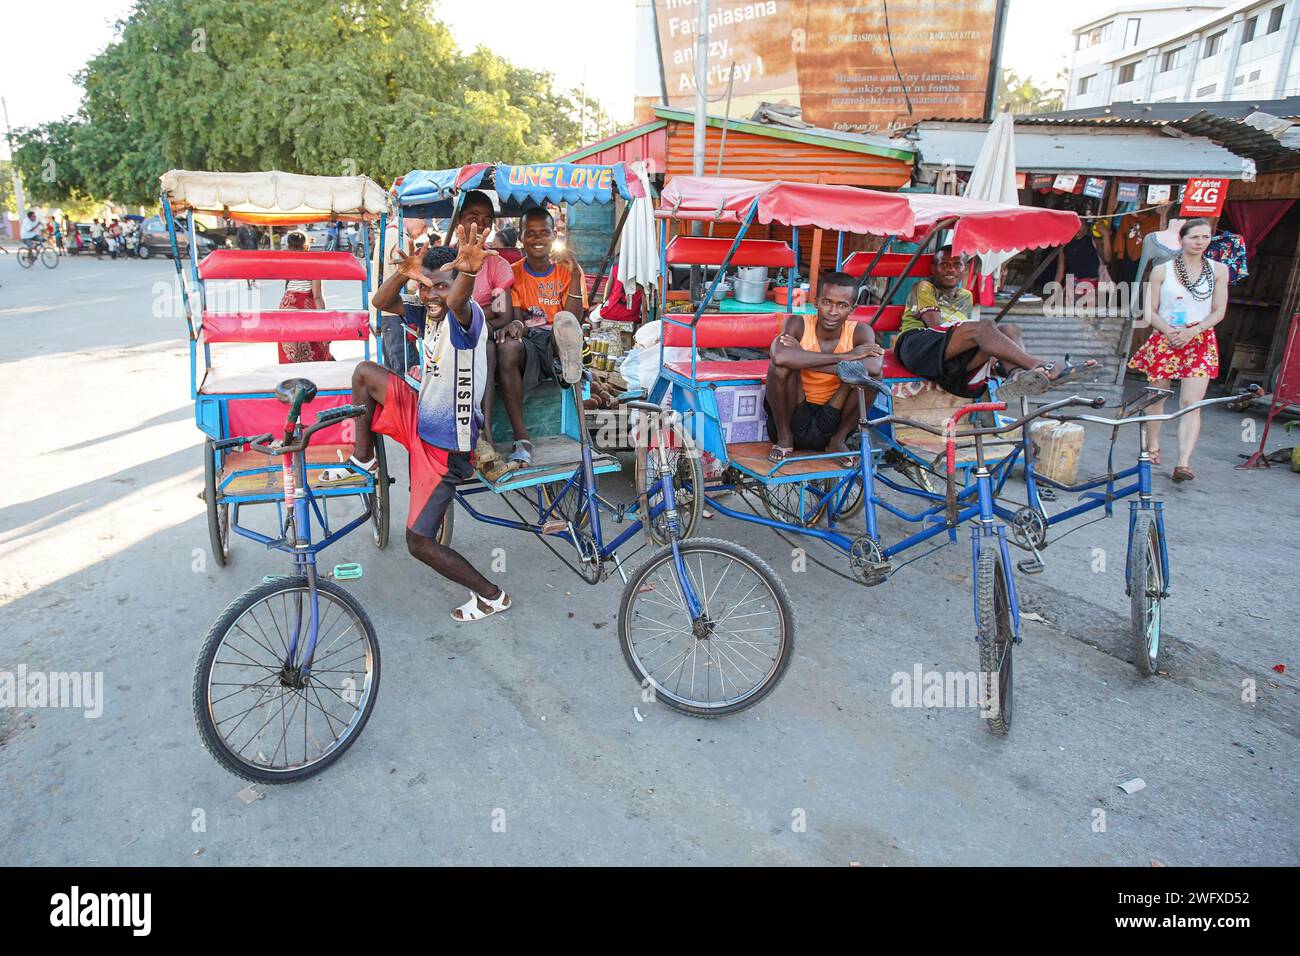 Toliara, Madagaskar - 1. Mai 2019: Gruppe unbekannter madagassischer Männer mit ihren Fahrrad-Rikscha-Wagen, die auf Passagiere warteten und vor der Kamera posierten. Diese t Stockfoto